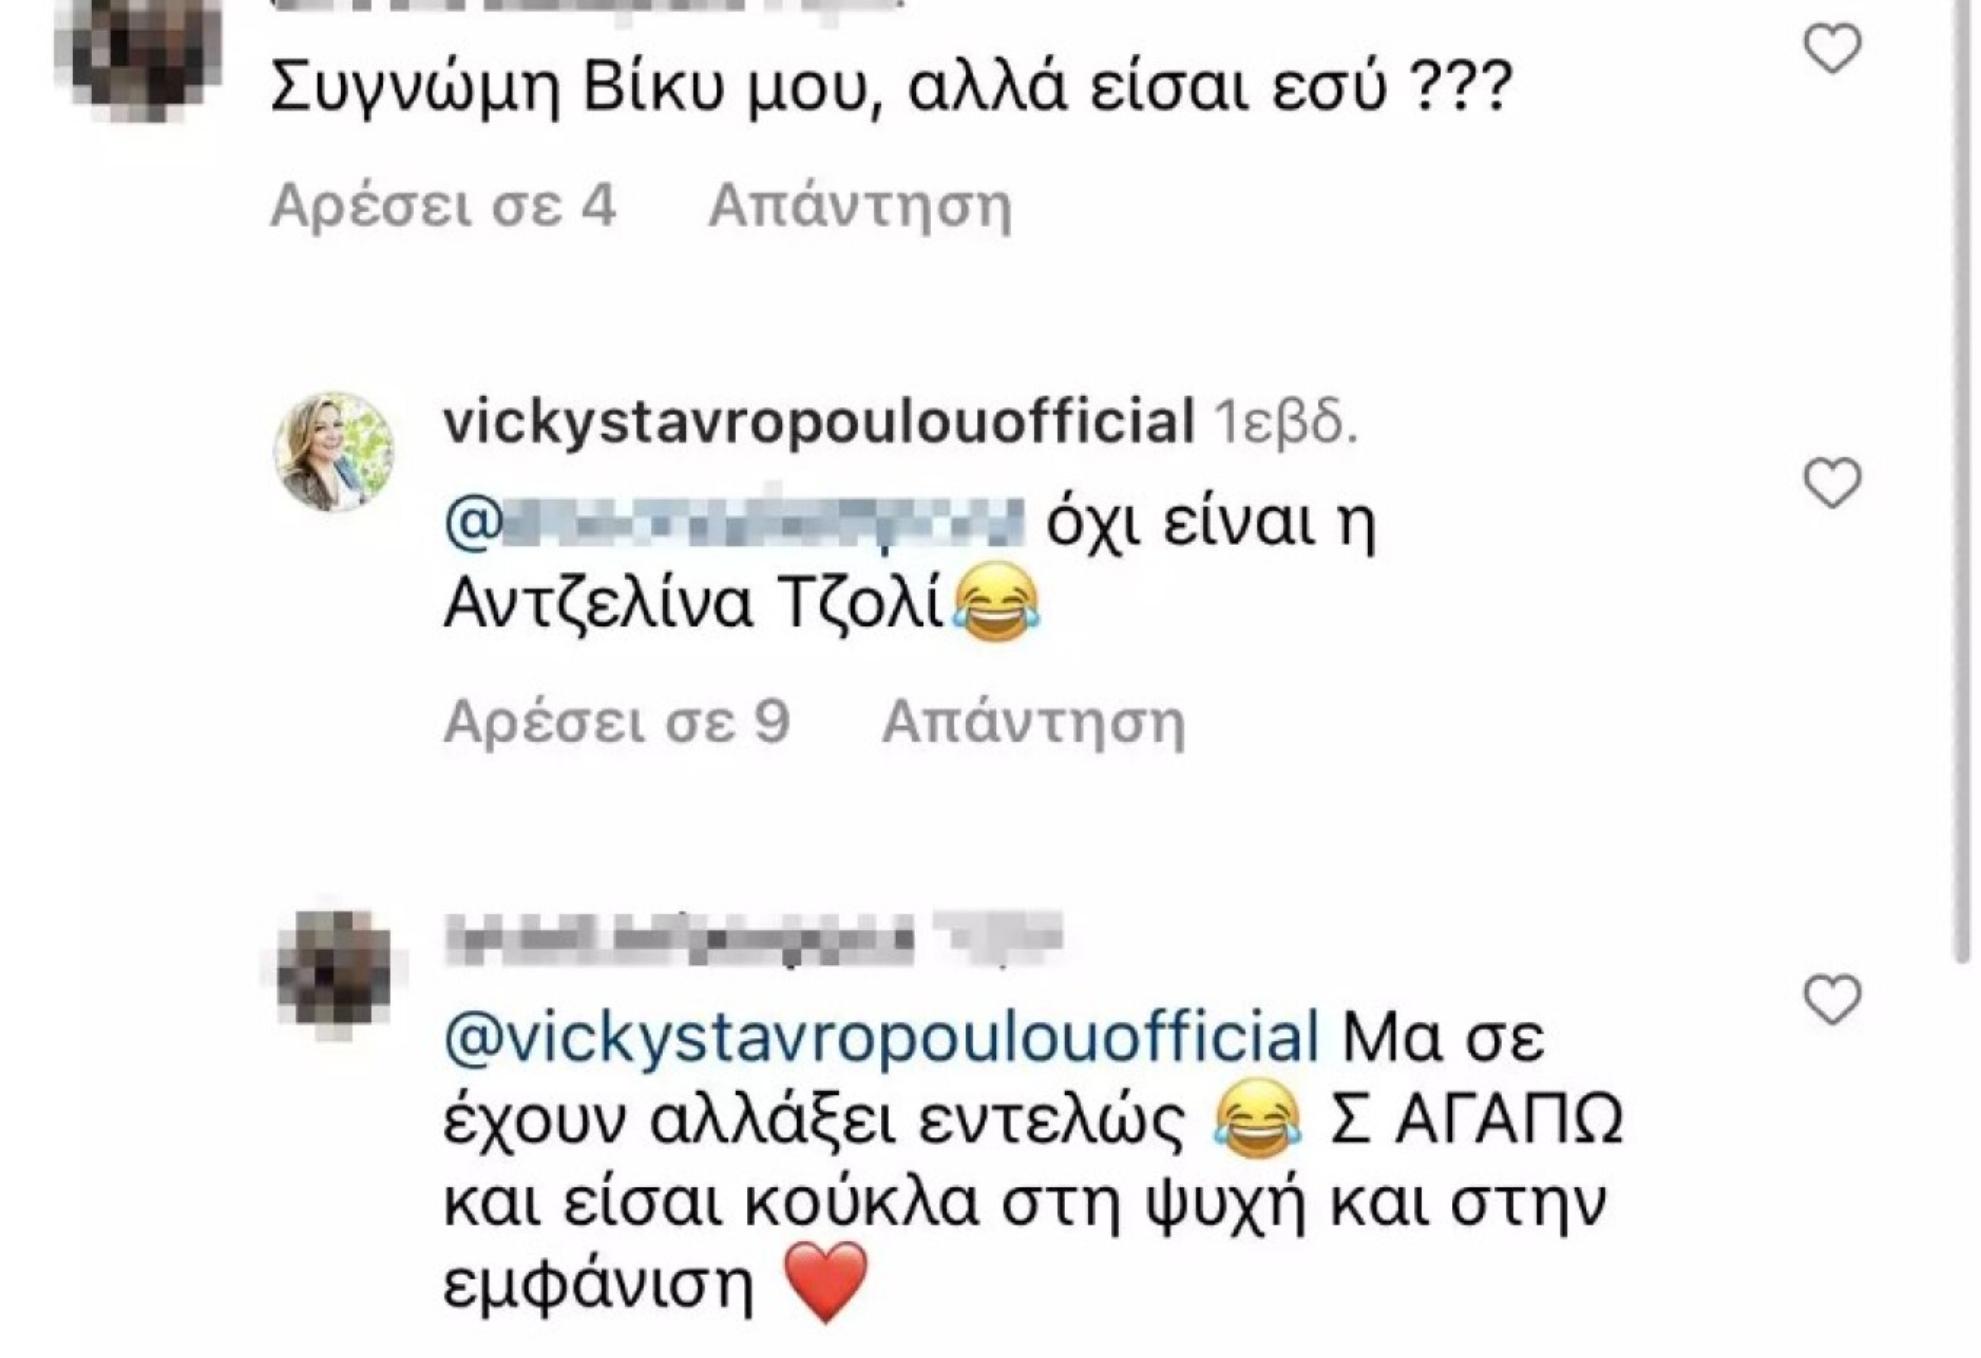 Βίκυ Σταυροπούλου: Η αποστομωτική απάντηση σε σχόλιο για την εμφάνισή της